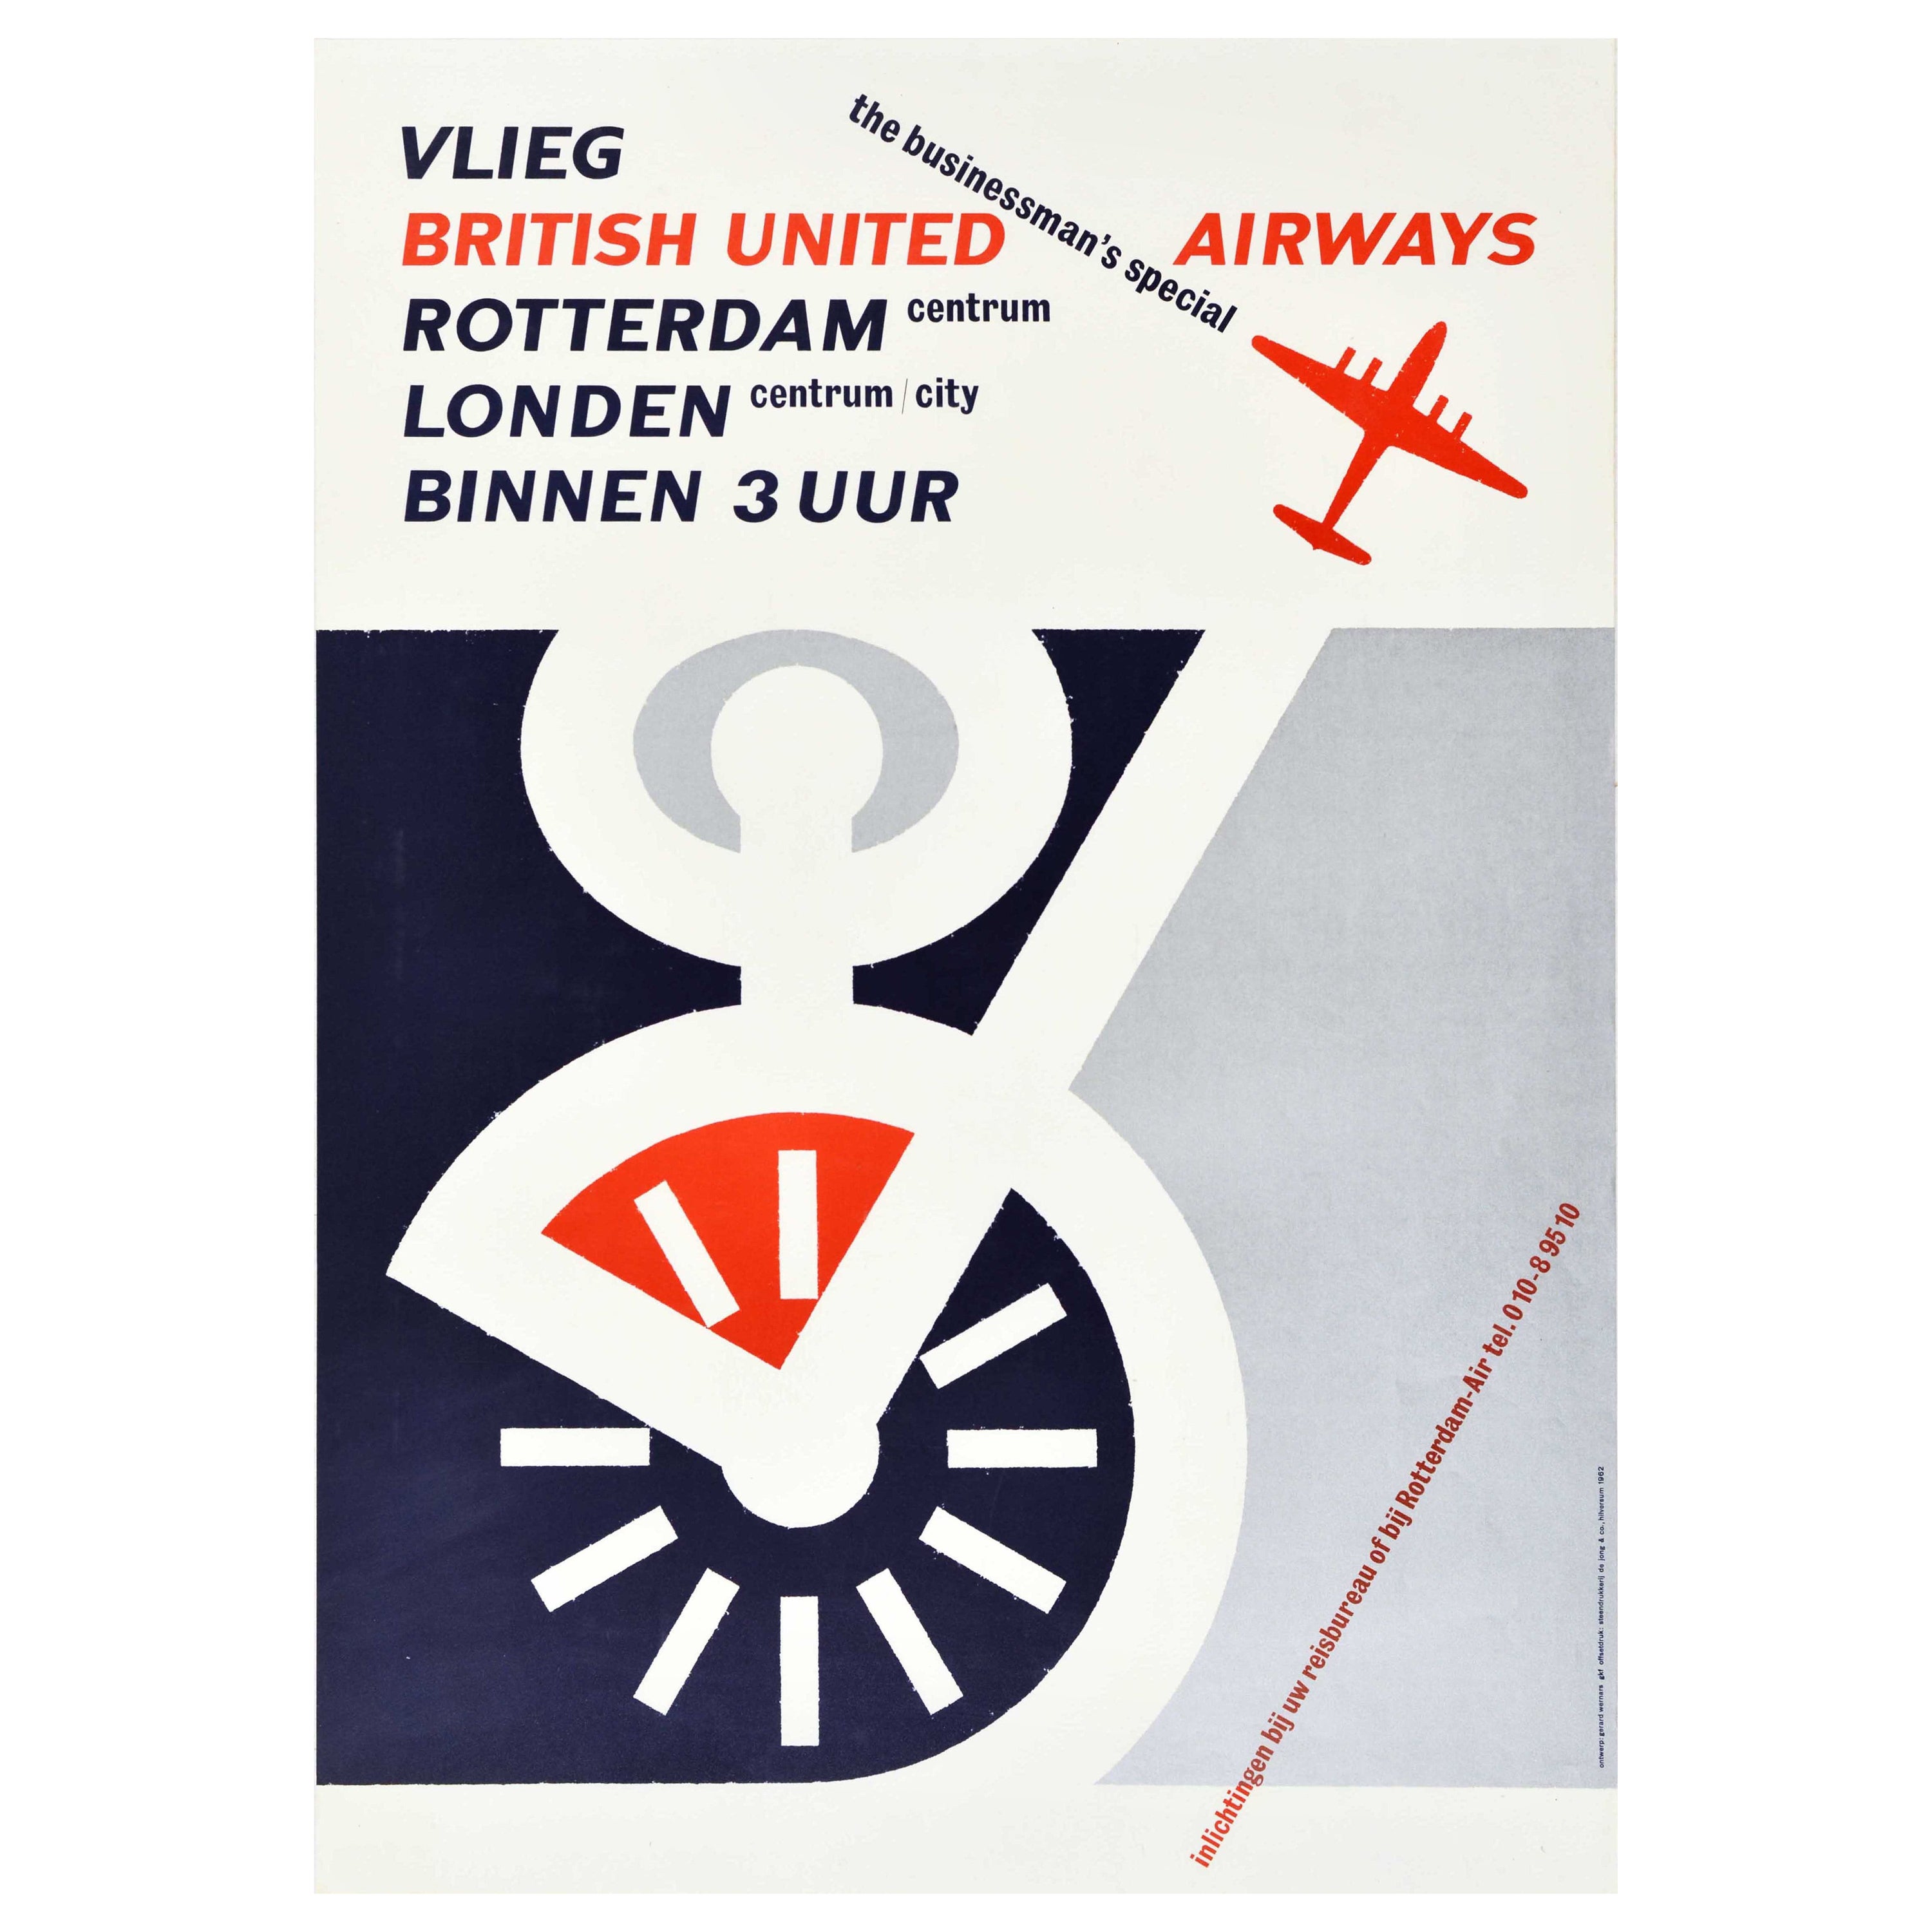 Affiche rétro originale de British United Airways pour les voyages d'affaires à Londres, Rotterdam